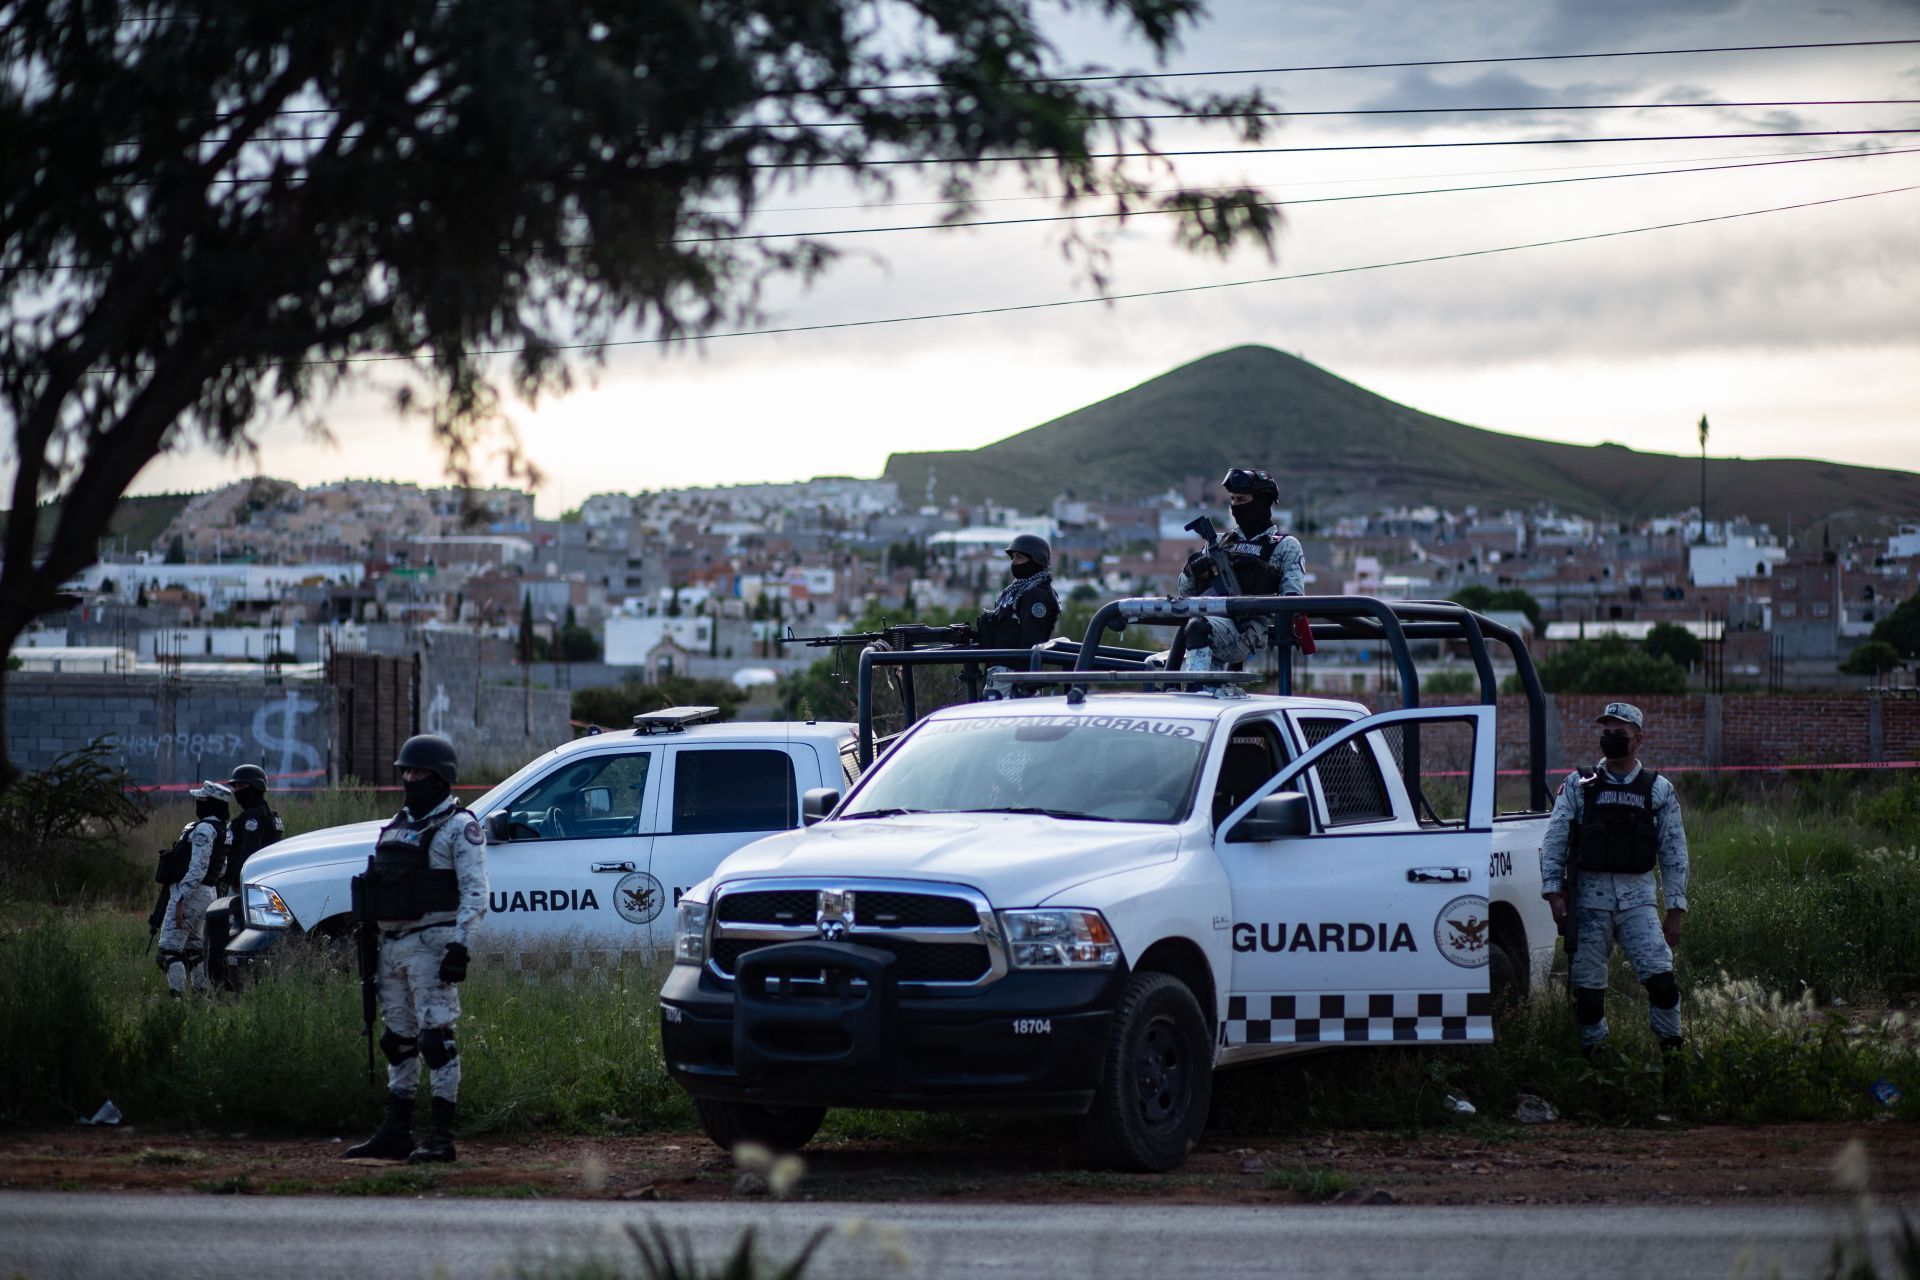 Agentes de la Guardia Nacional interceptaron un camión que buscaba pasar diversas armas largas ilegales a México

FOTO: ADOLFO VLADIMIR /CUARTOSCURO.COM